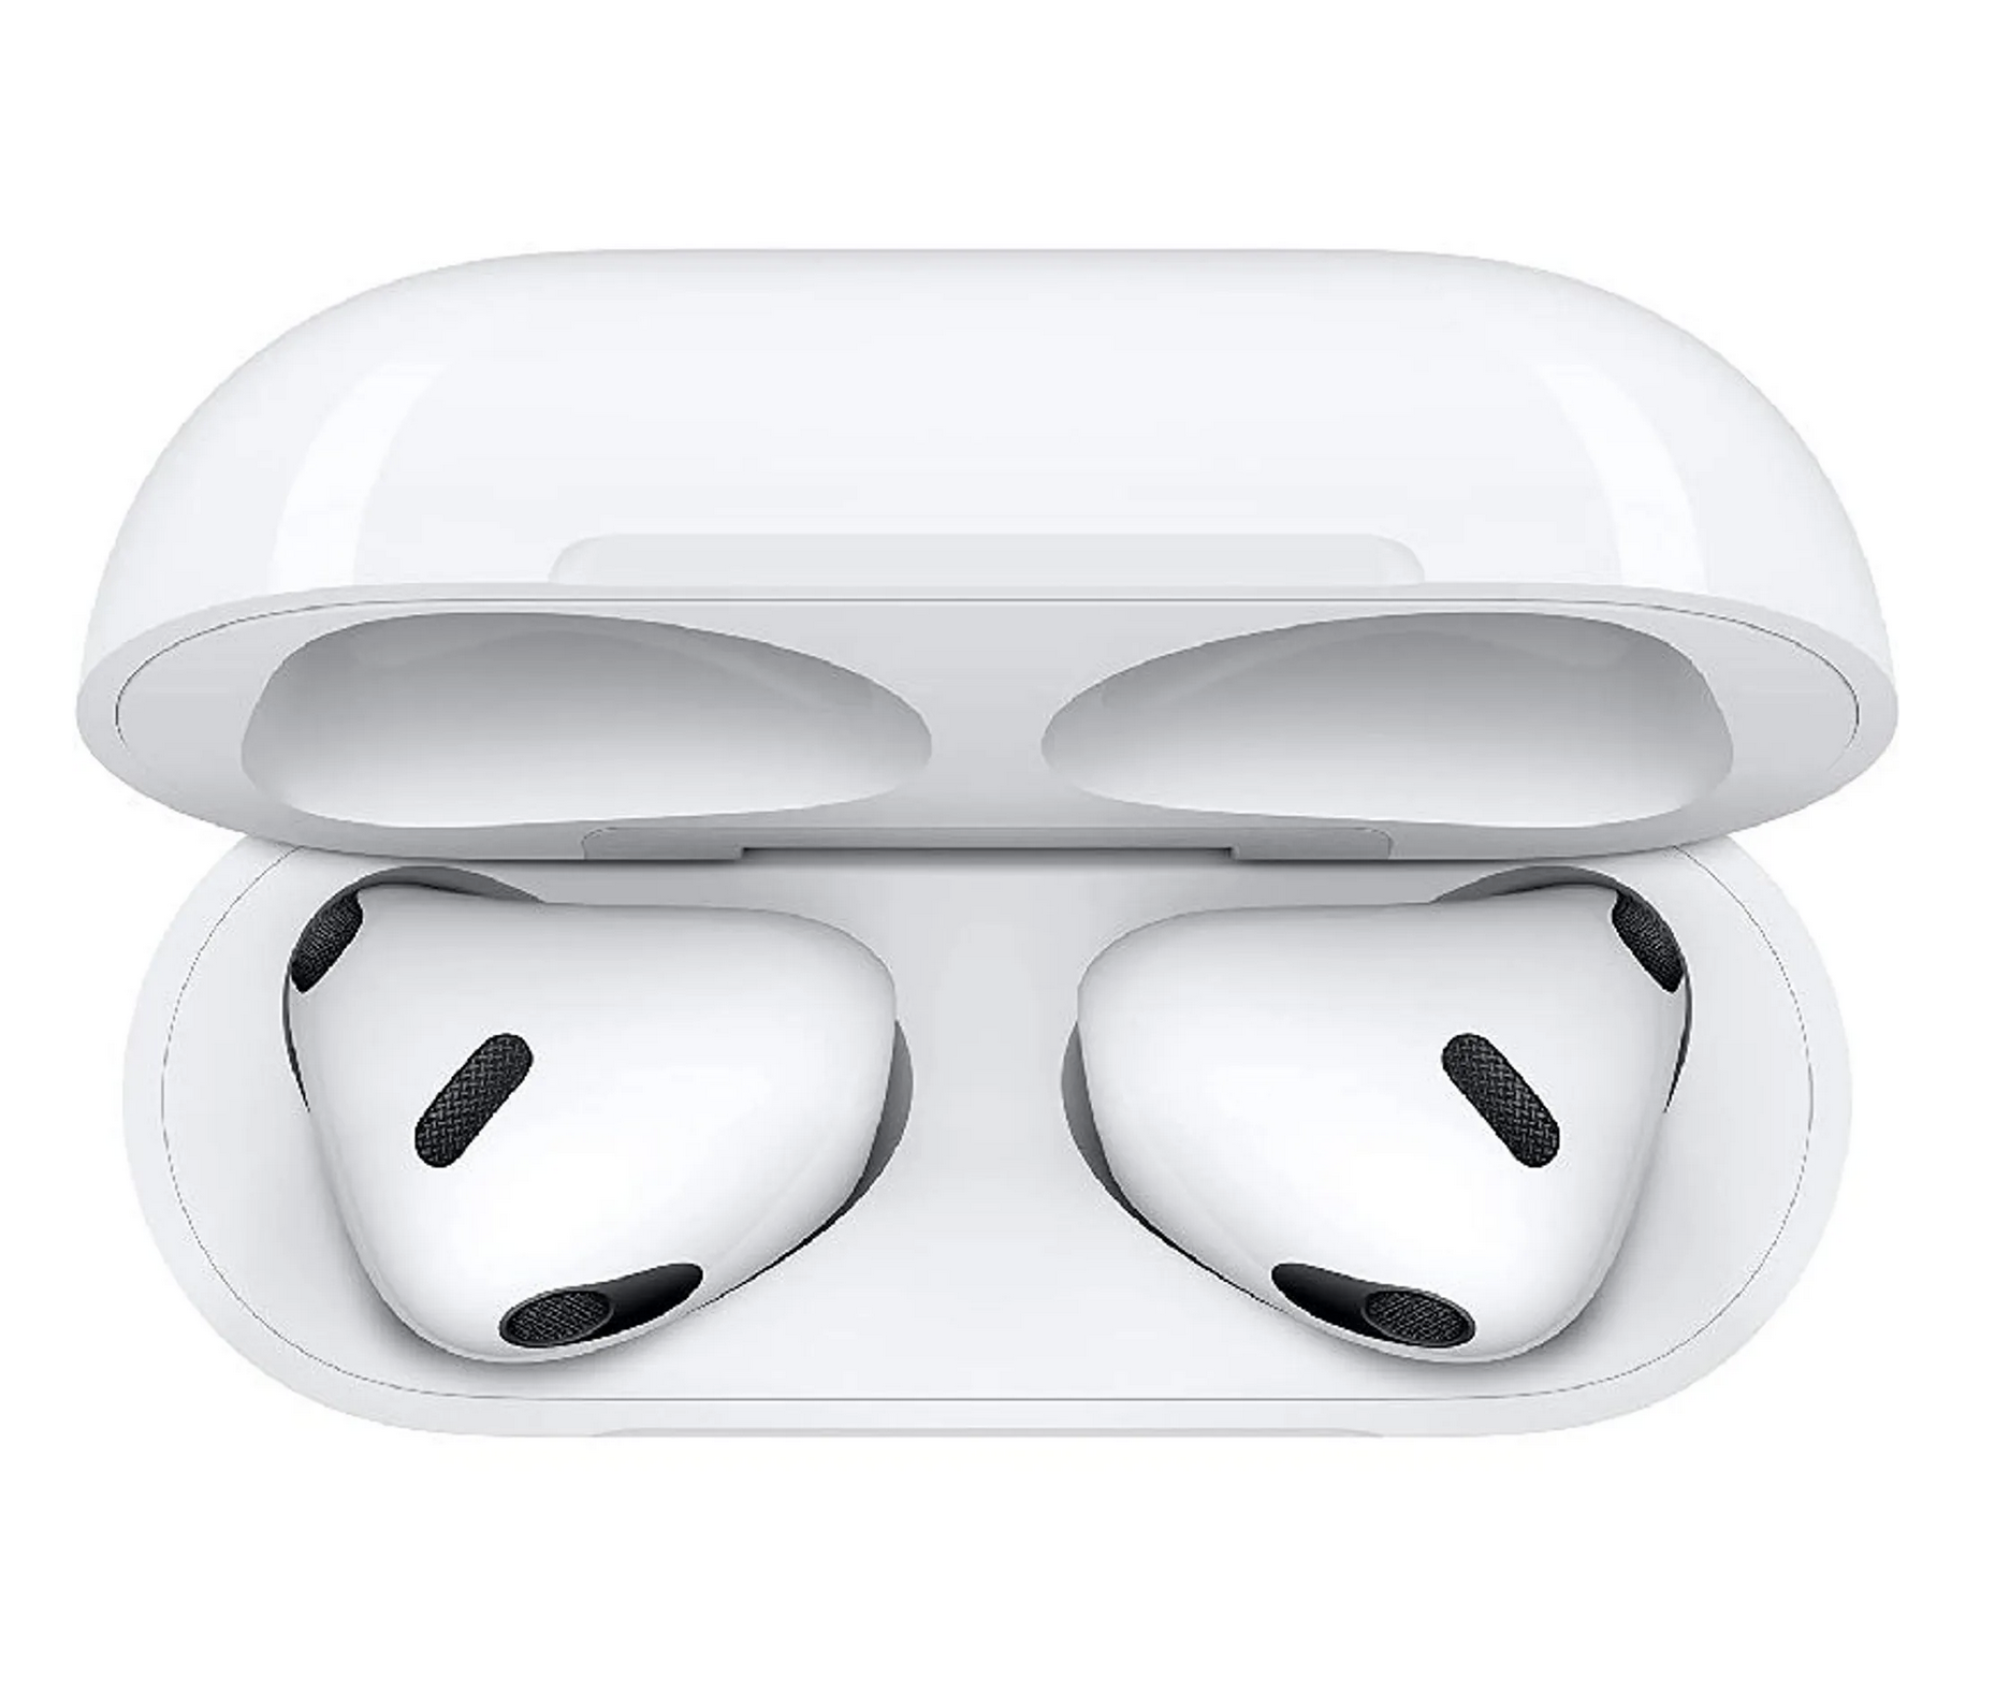 Bluetooth Kopfhörer für Apple iPhone & Android Air pods 3te. G Kabellose Kopfhörer mit Ladecase